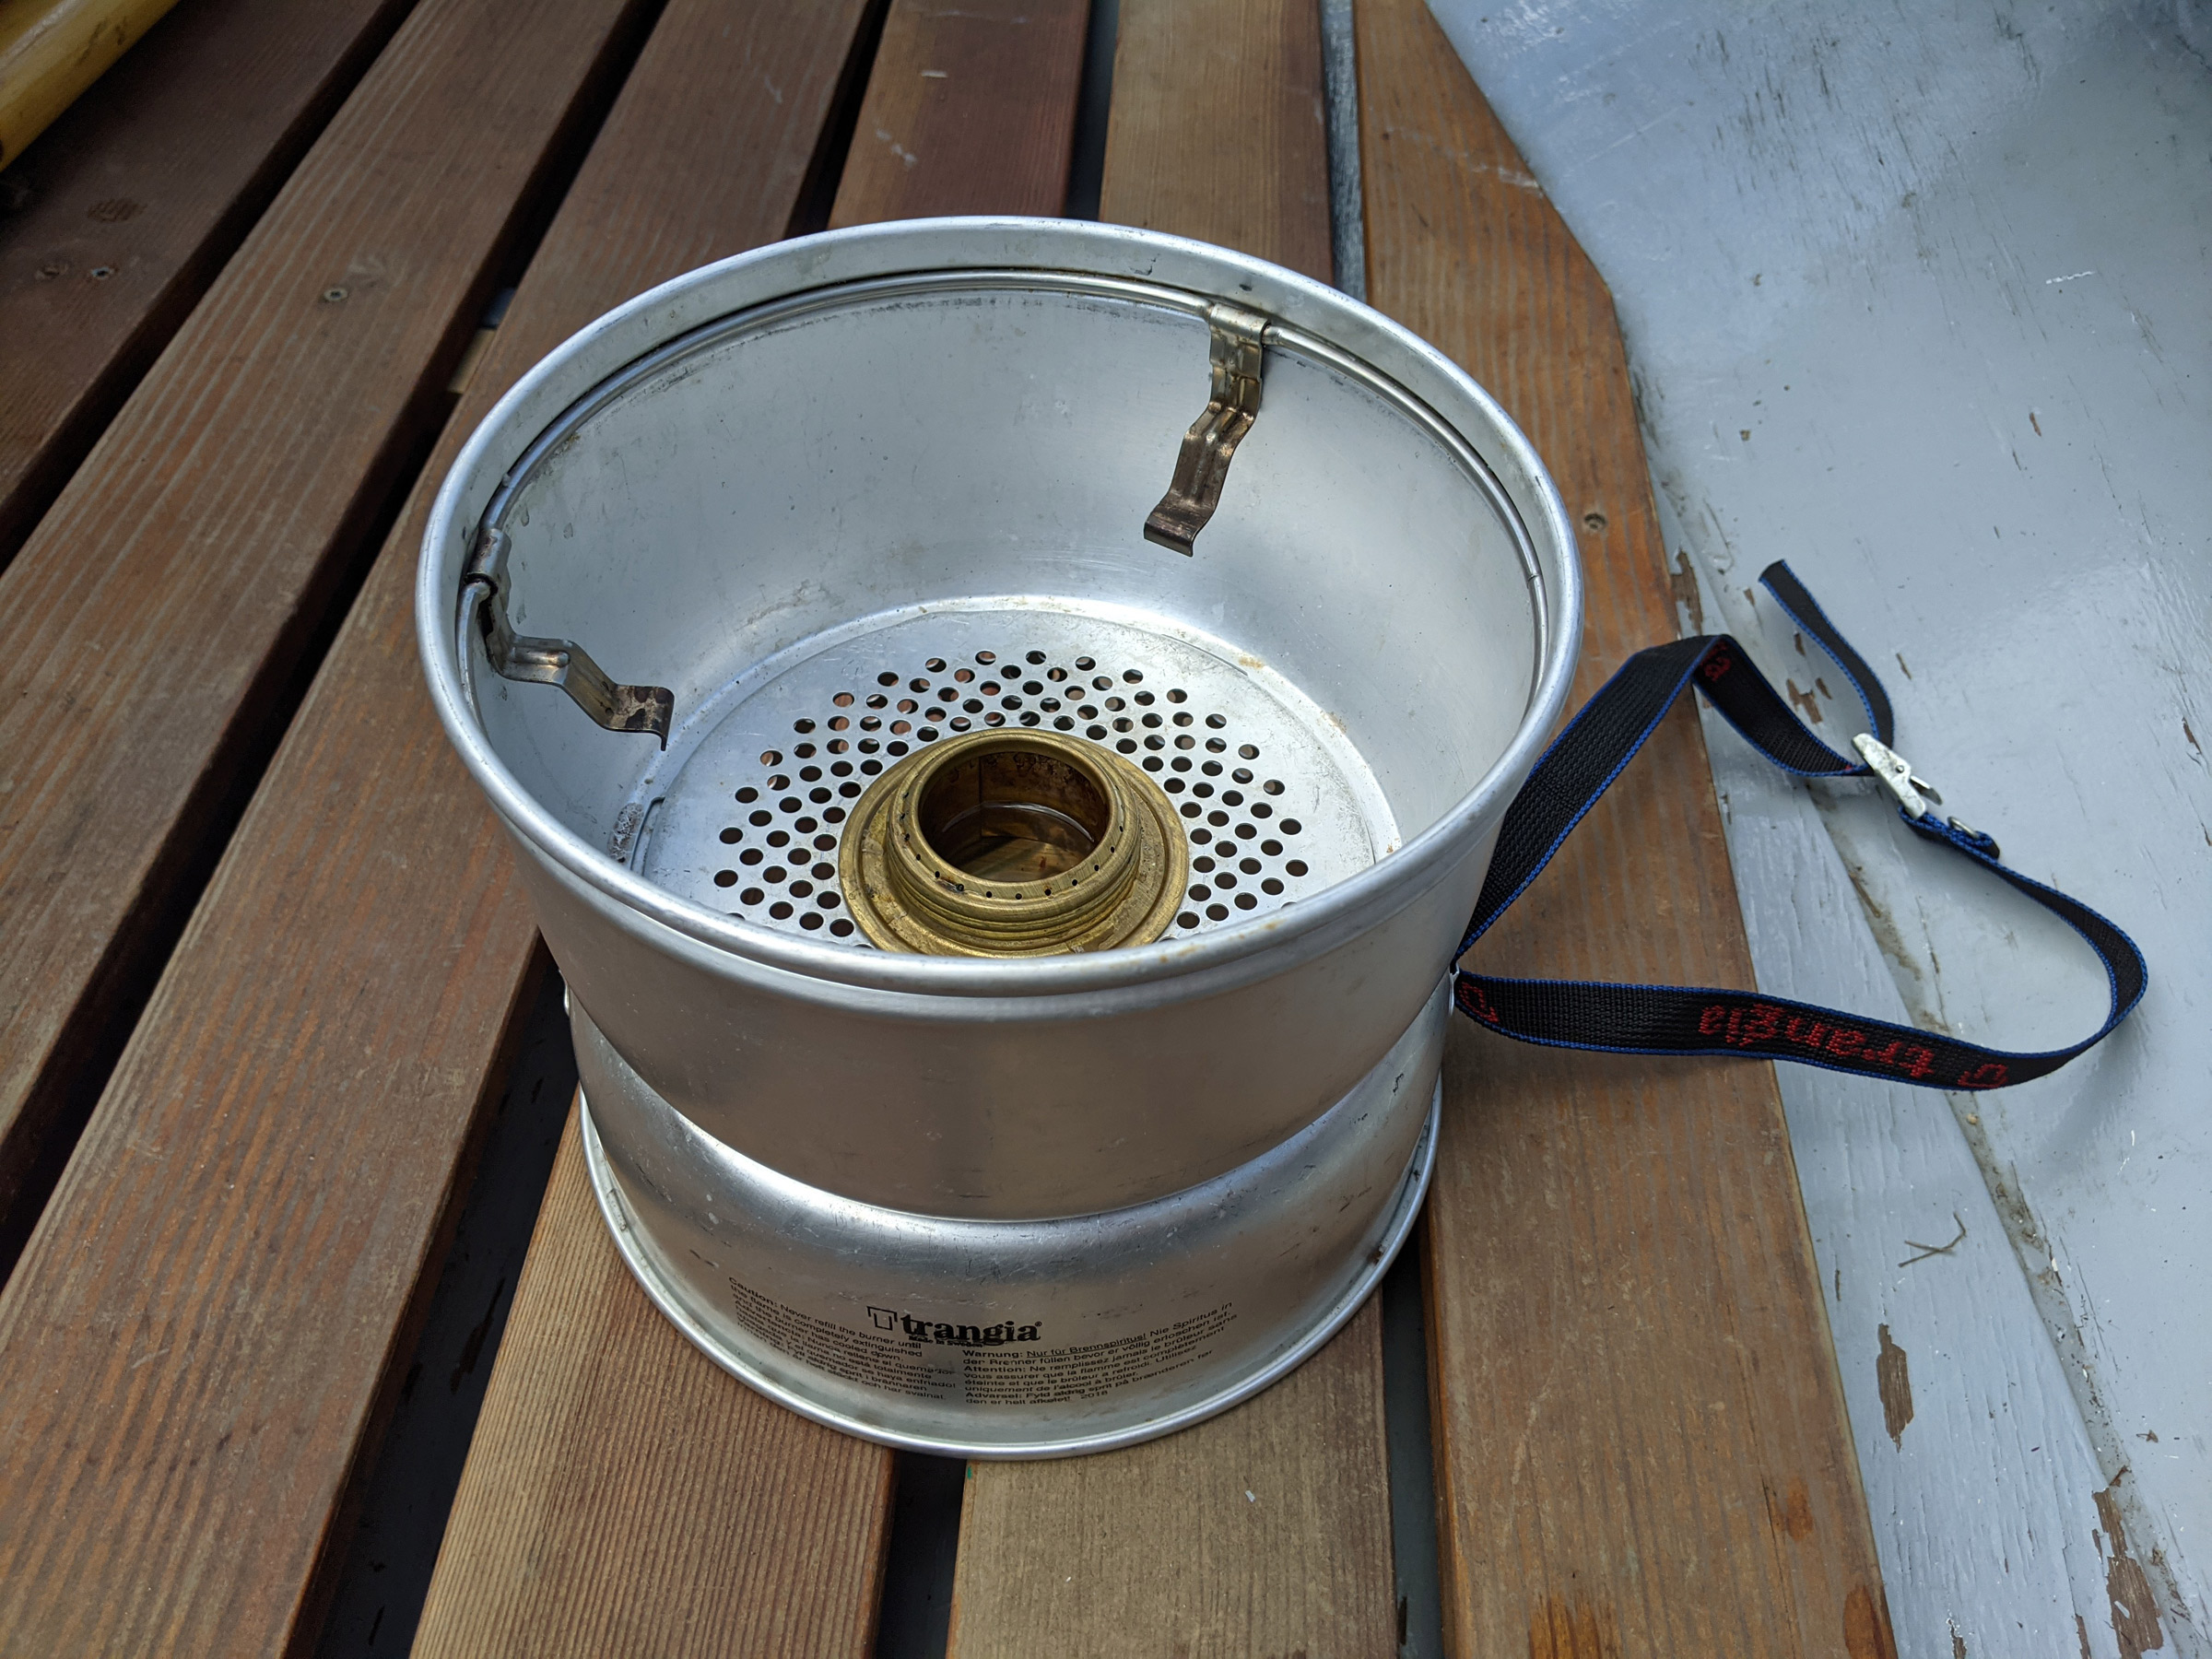 Trangia Windbreaker Top 27 small UL ALU HA grey 2019 camping stove 